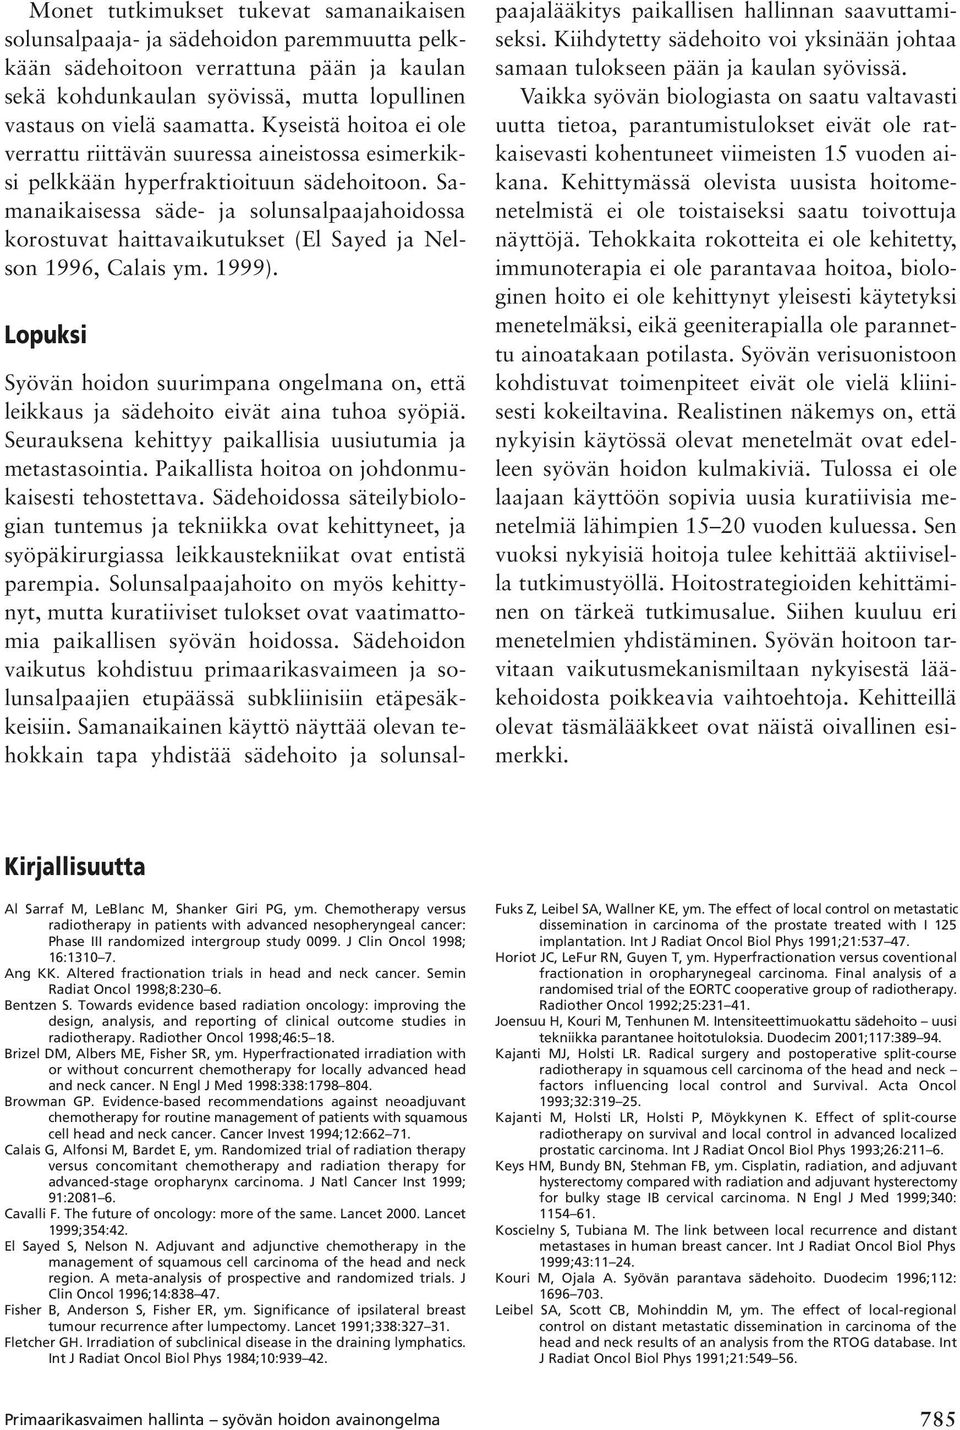 Samanaikaisessa säde- ja solunsalpaajahoidossa korostuvat haittavaikutukset (El Sayed ja Nelson 1996, Calais ym. 1999).